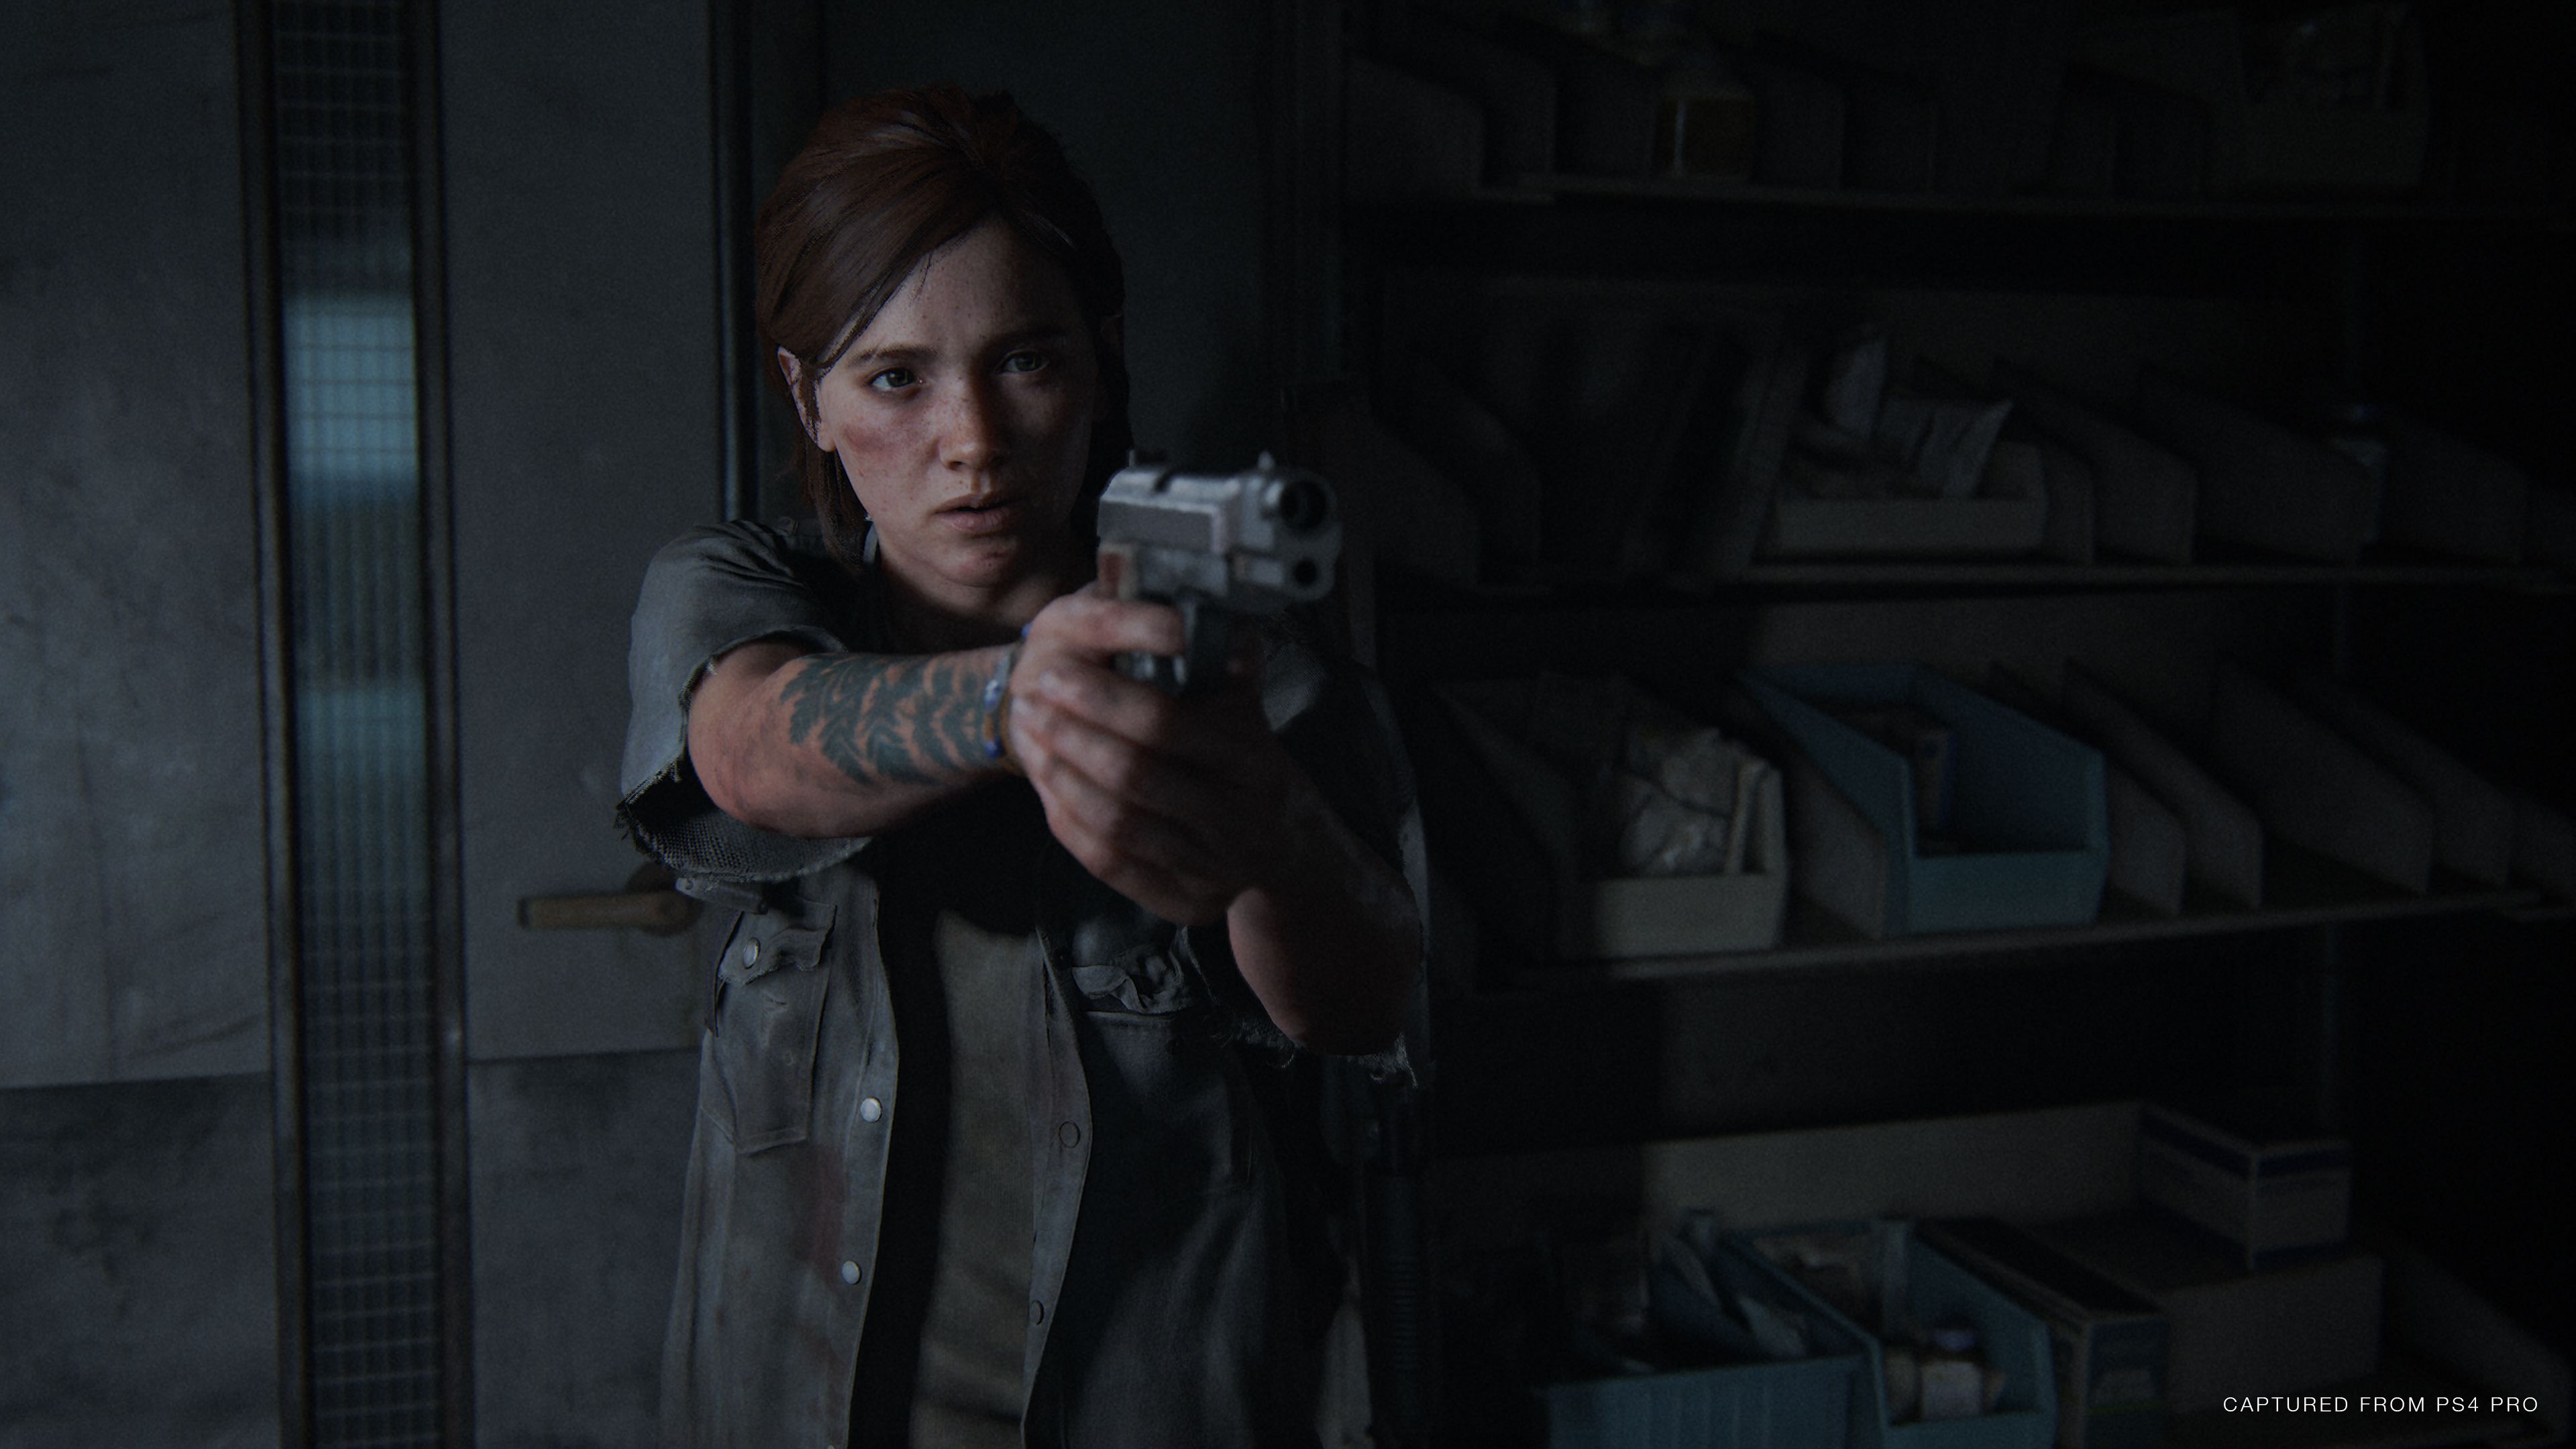 Xbox quer jogos no nível de The Last of Us Part 2, revelam documentos 